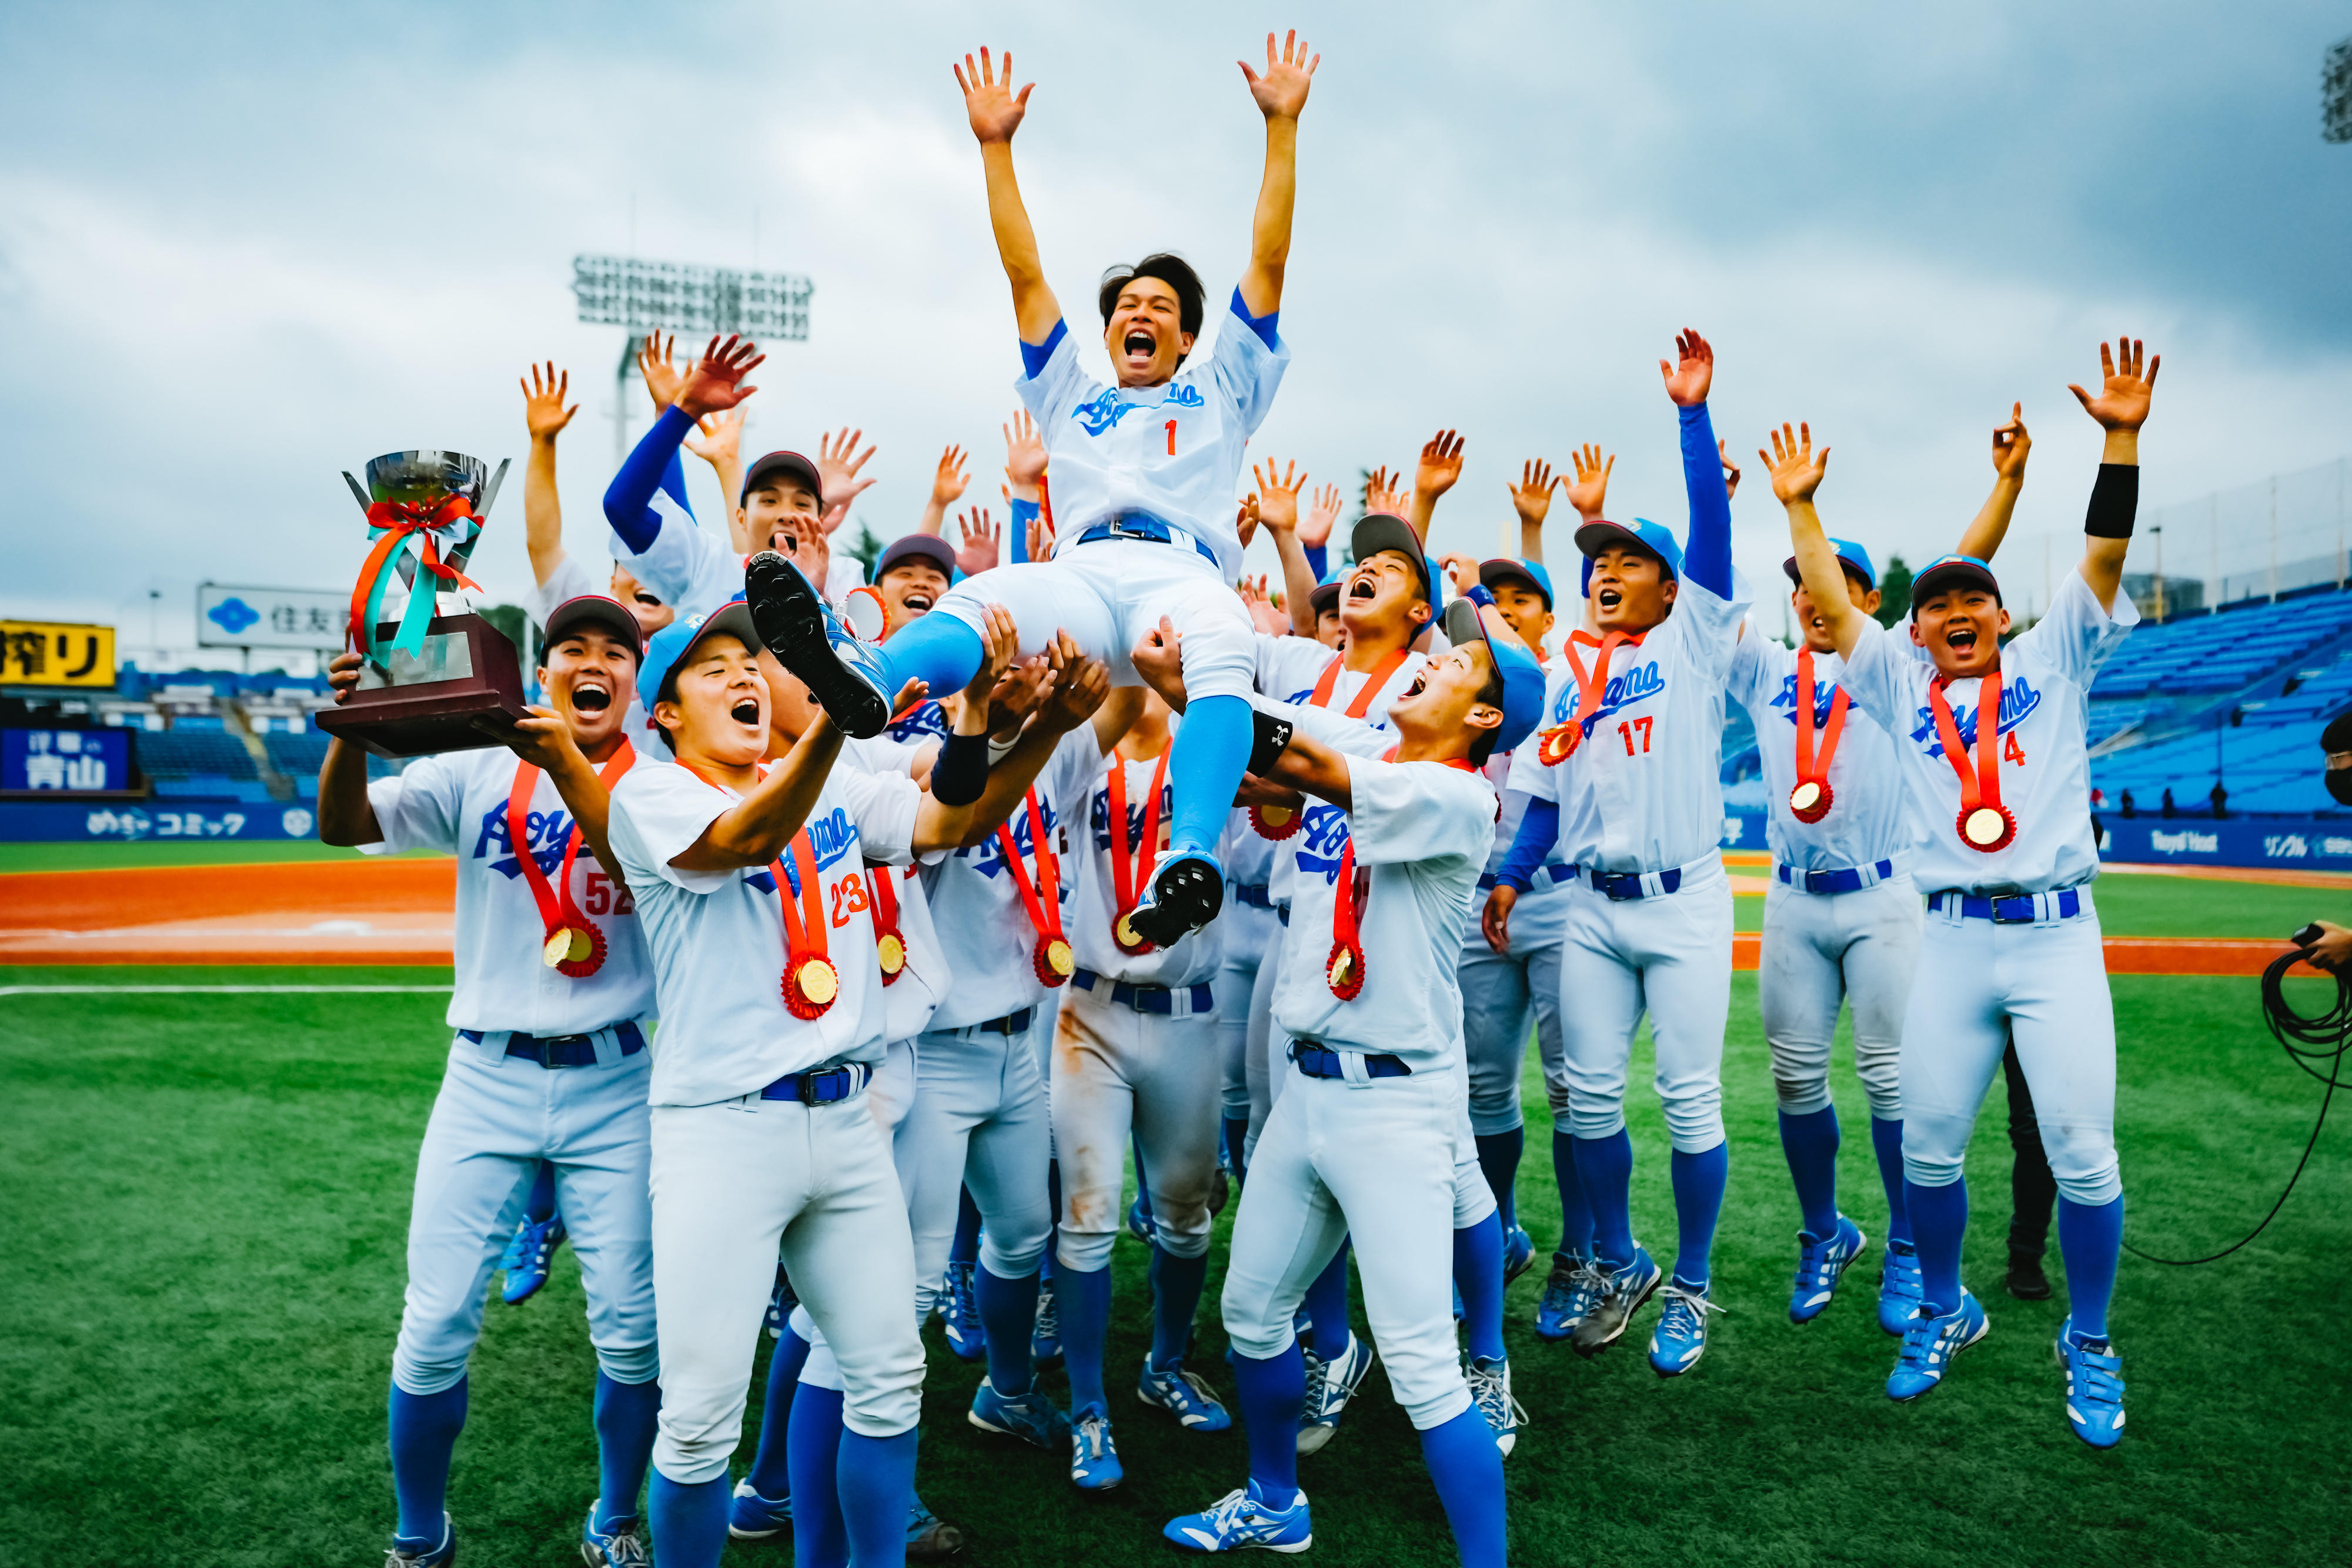 青山学院大学硬式野球部　全日本大学野球選手権大会優勝報告会・メディア共同取材のご案内